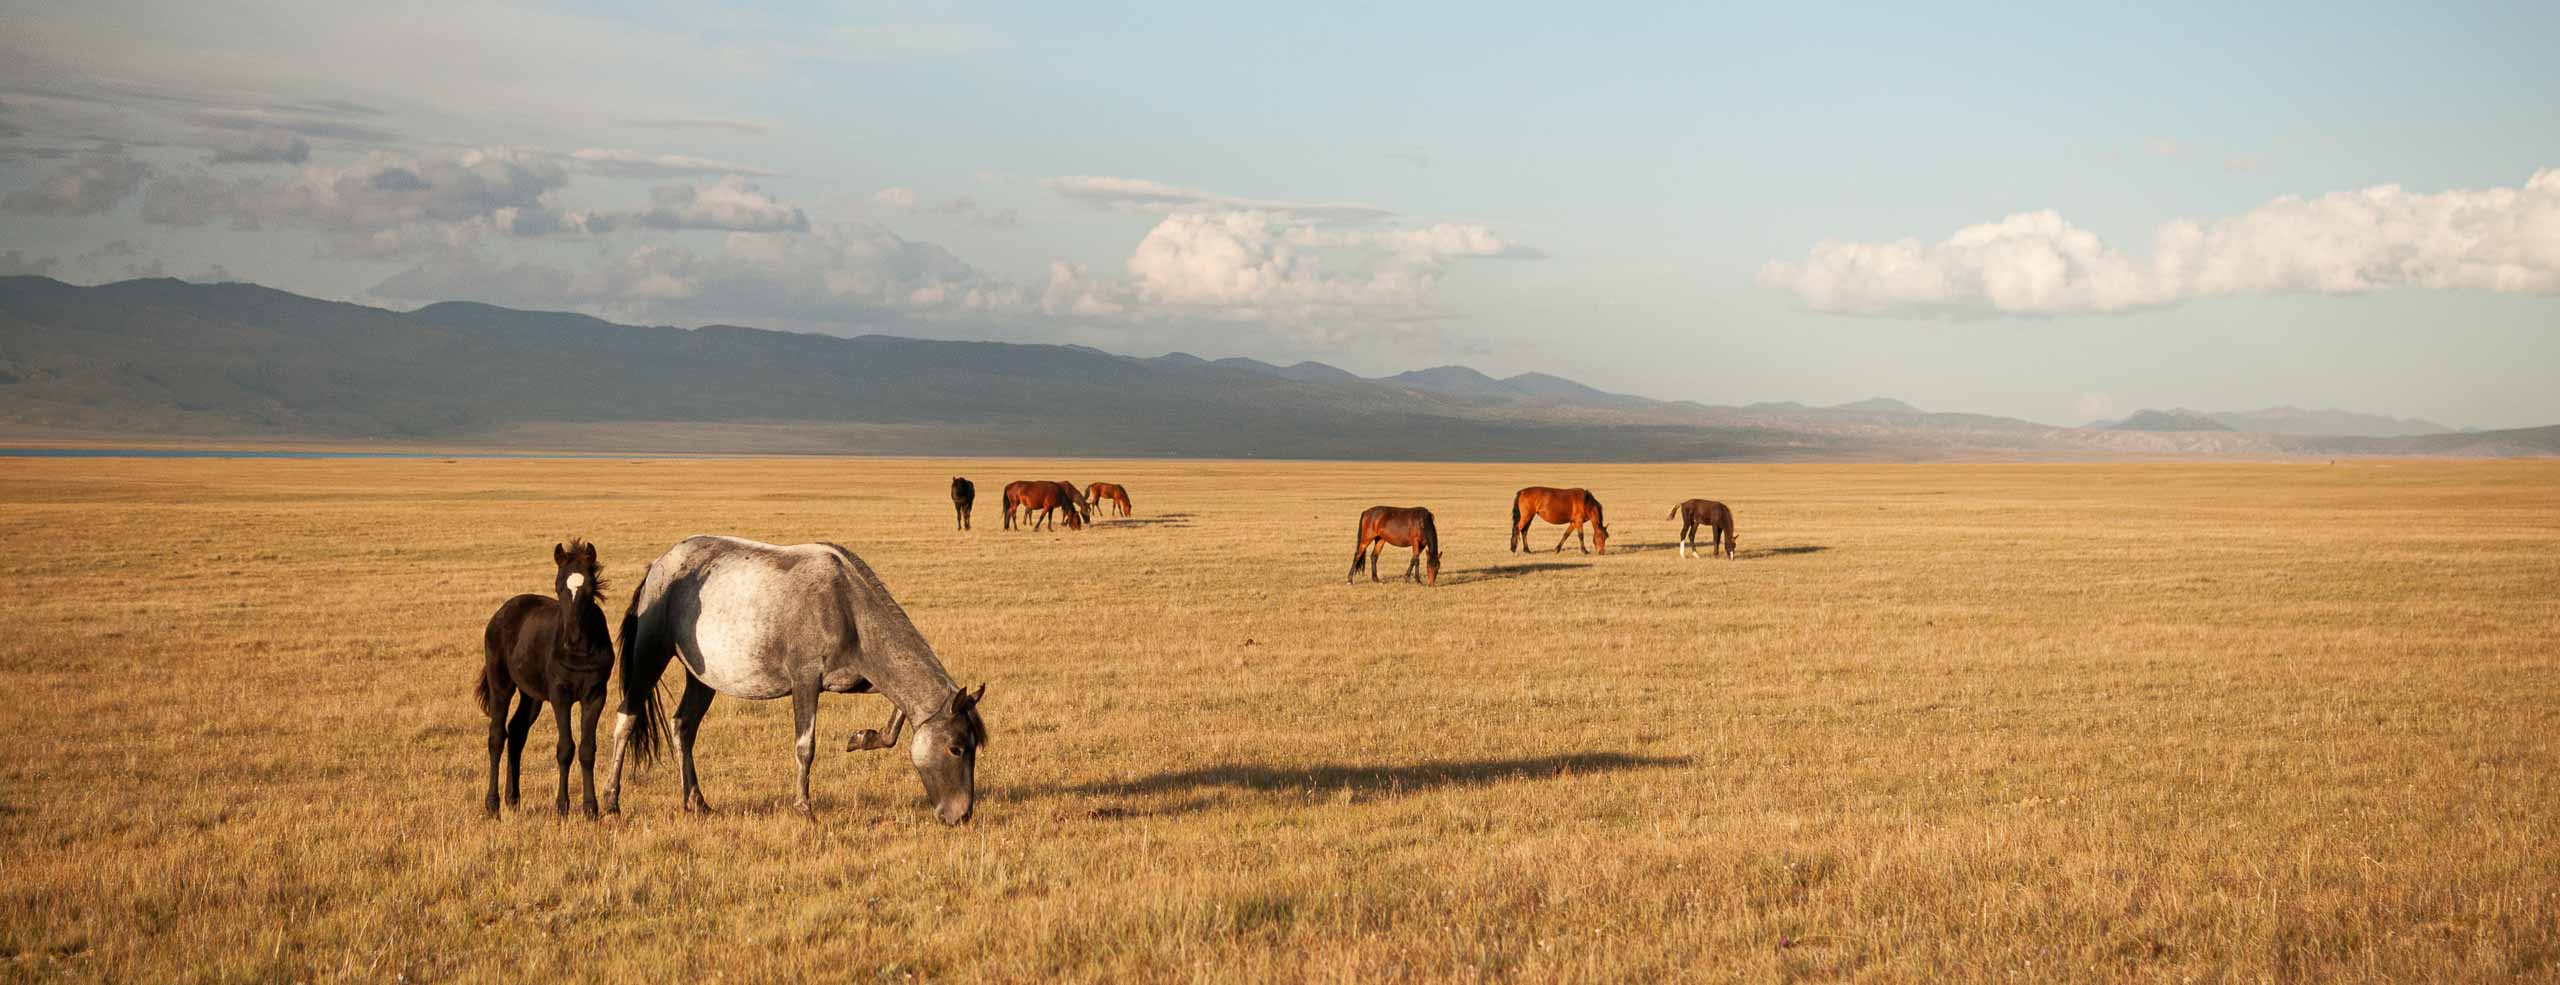 Une certaine idée de la Liberté - Chevaux à l'état sauvage sous le soleil dans une steppe d'Asie Centrale, Monts Tian Shan, Lac de song Kul, Kyrgyzstan